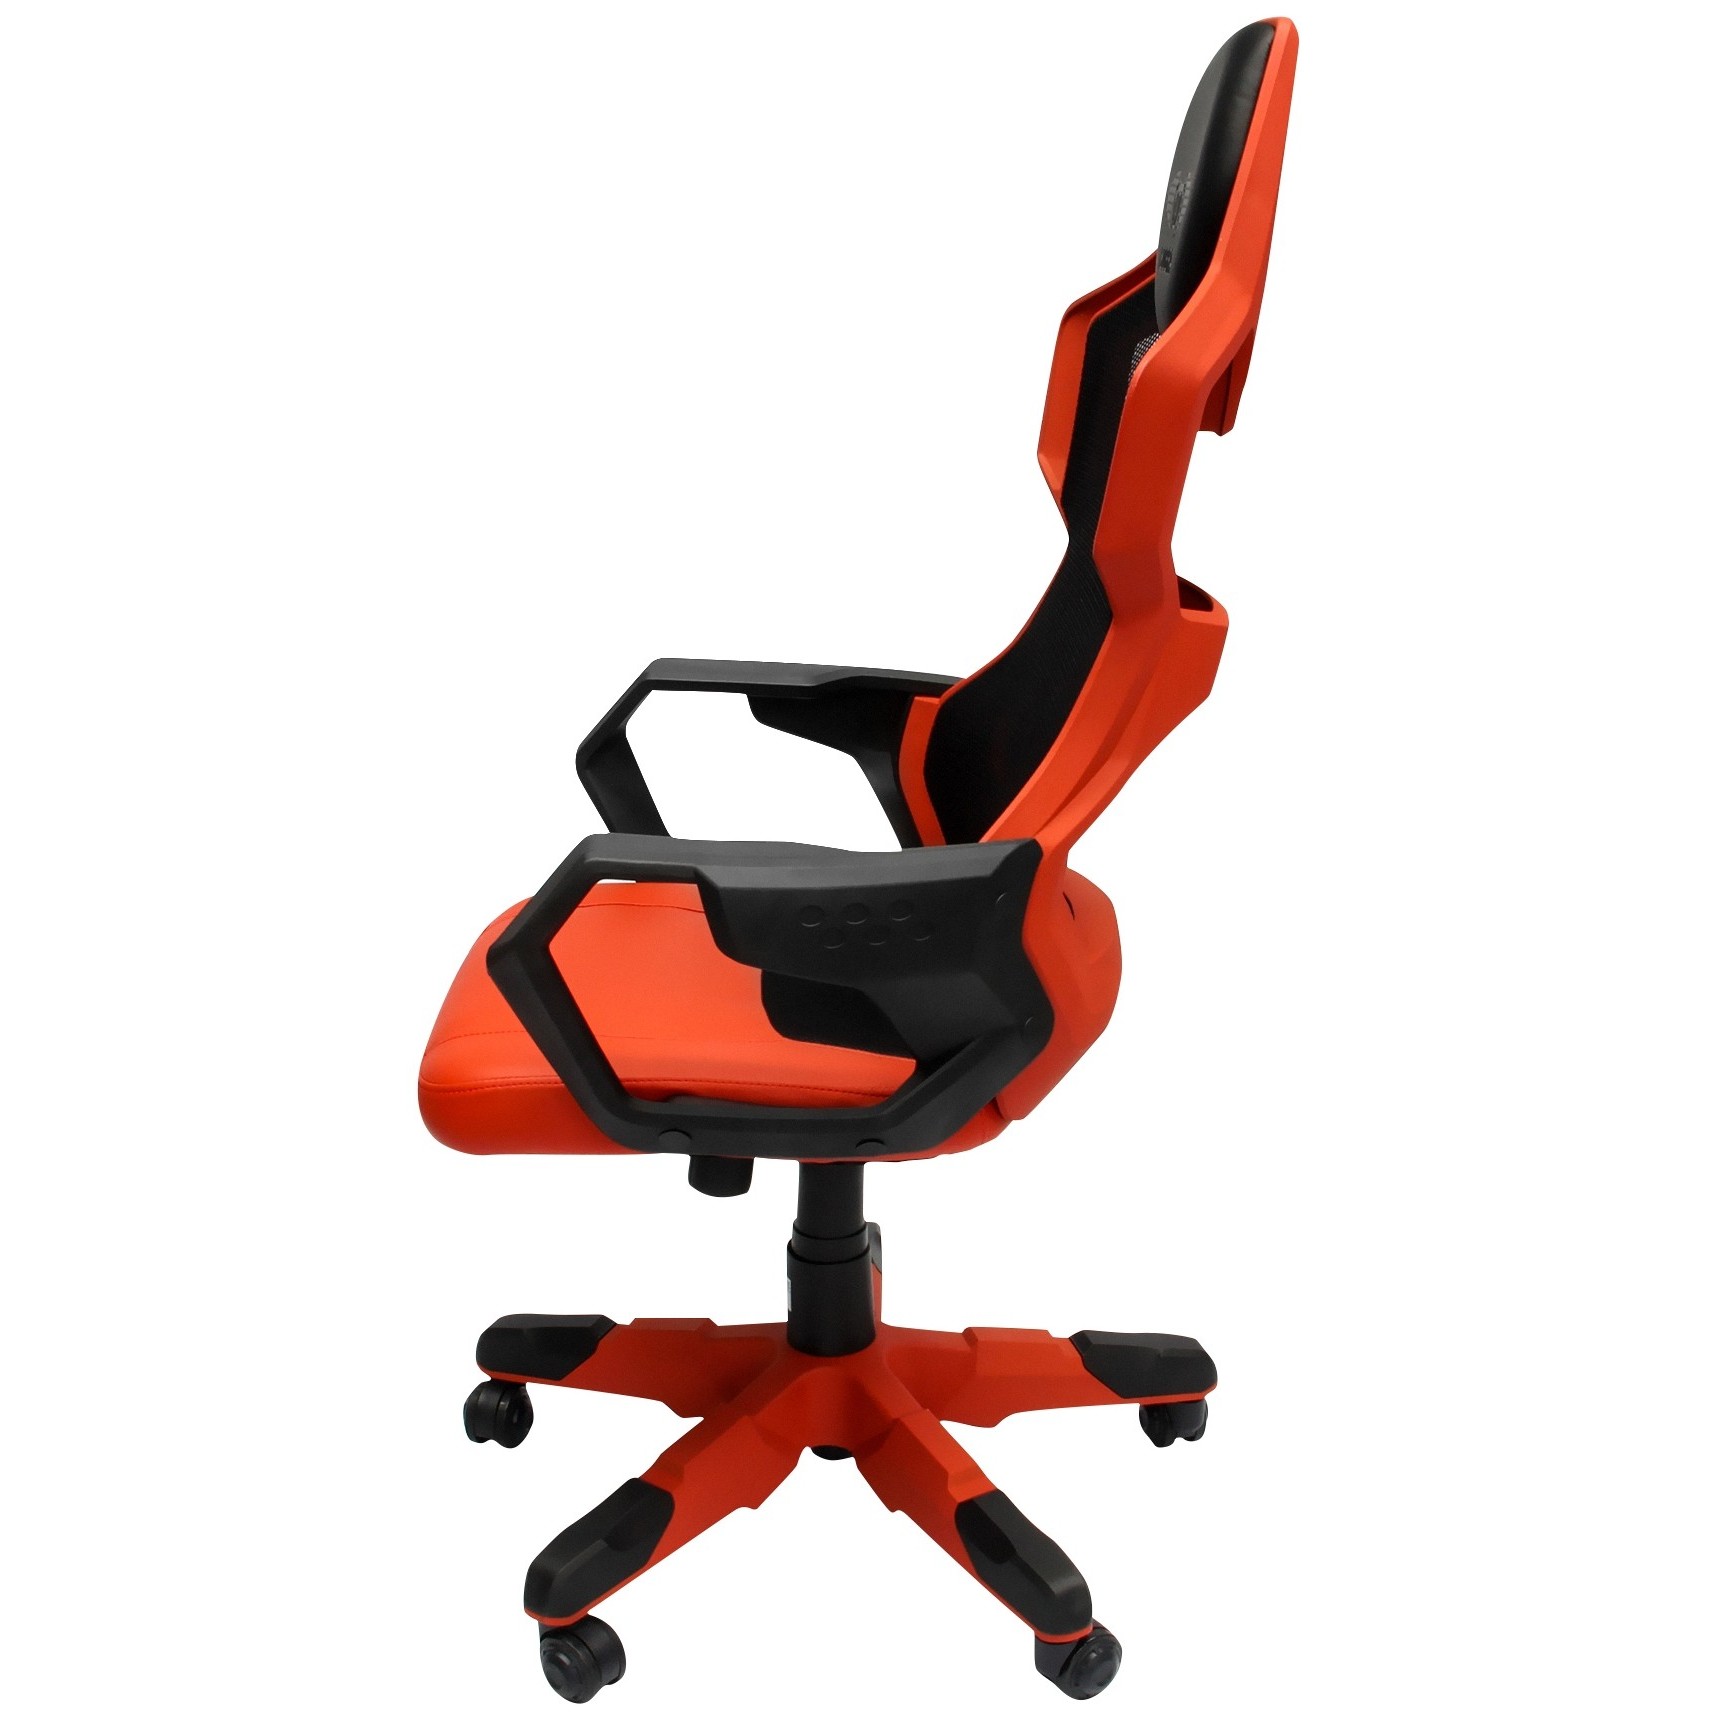 Игровое кресло 2e Chair Hibagon Black/Red. E-Blue Cobra кресло. E-Blue professional Gaming Seat Cobra офисный стул. Giotto Stoppino Cobra стул. Gaming cobra